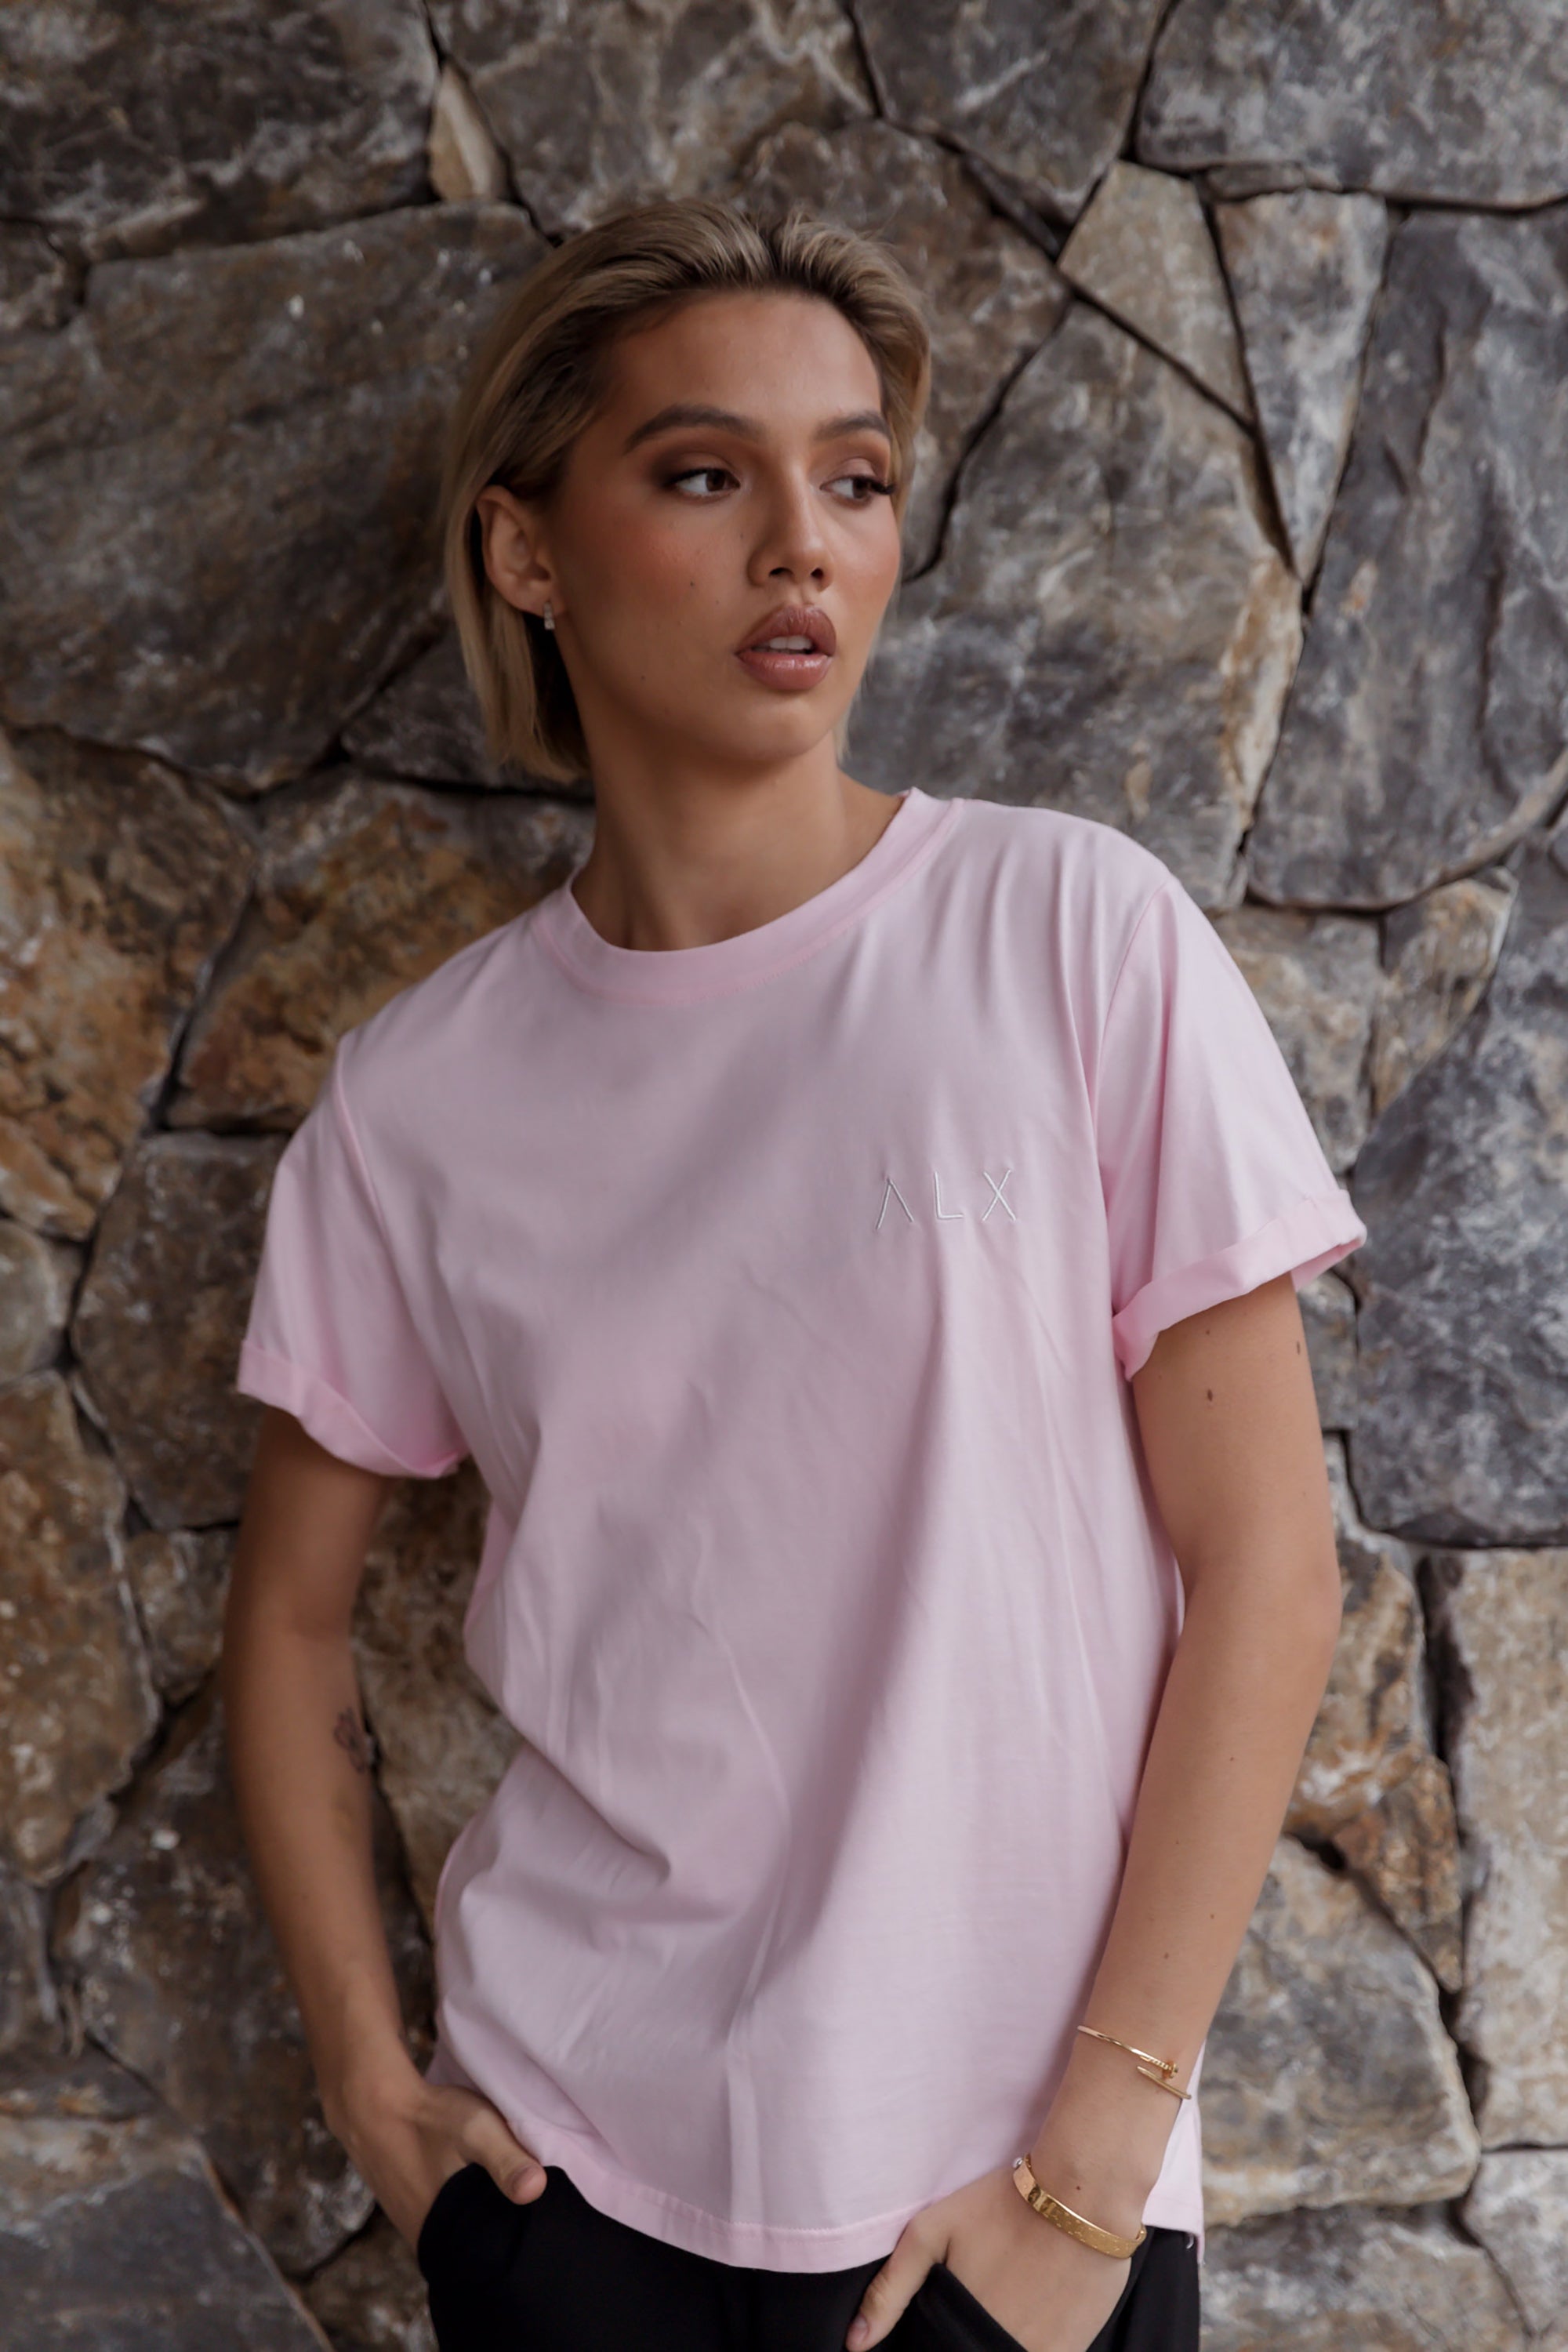 Λ L X Crew T-Shirt Pink